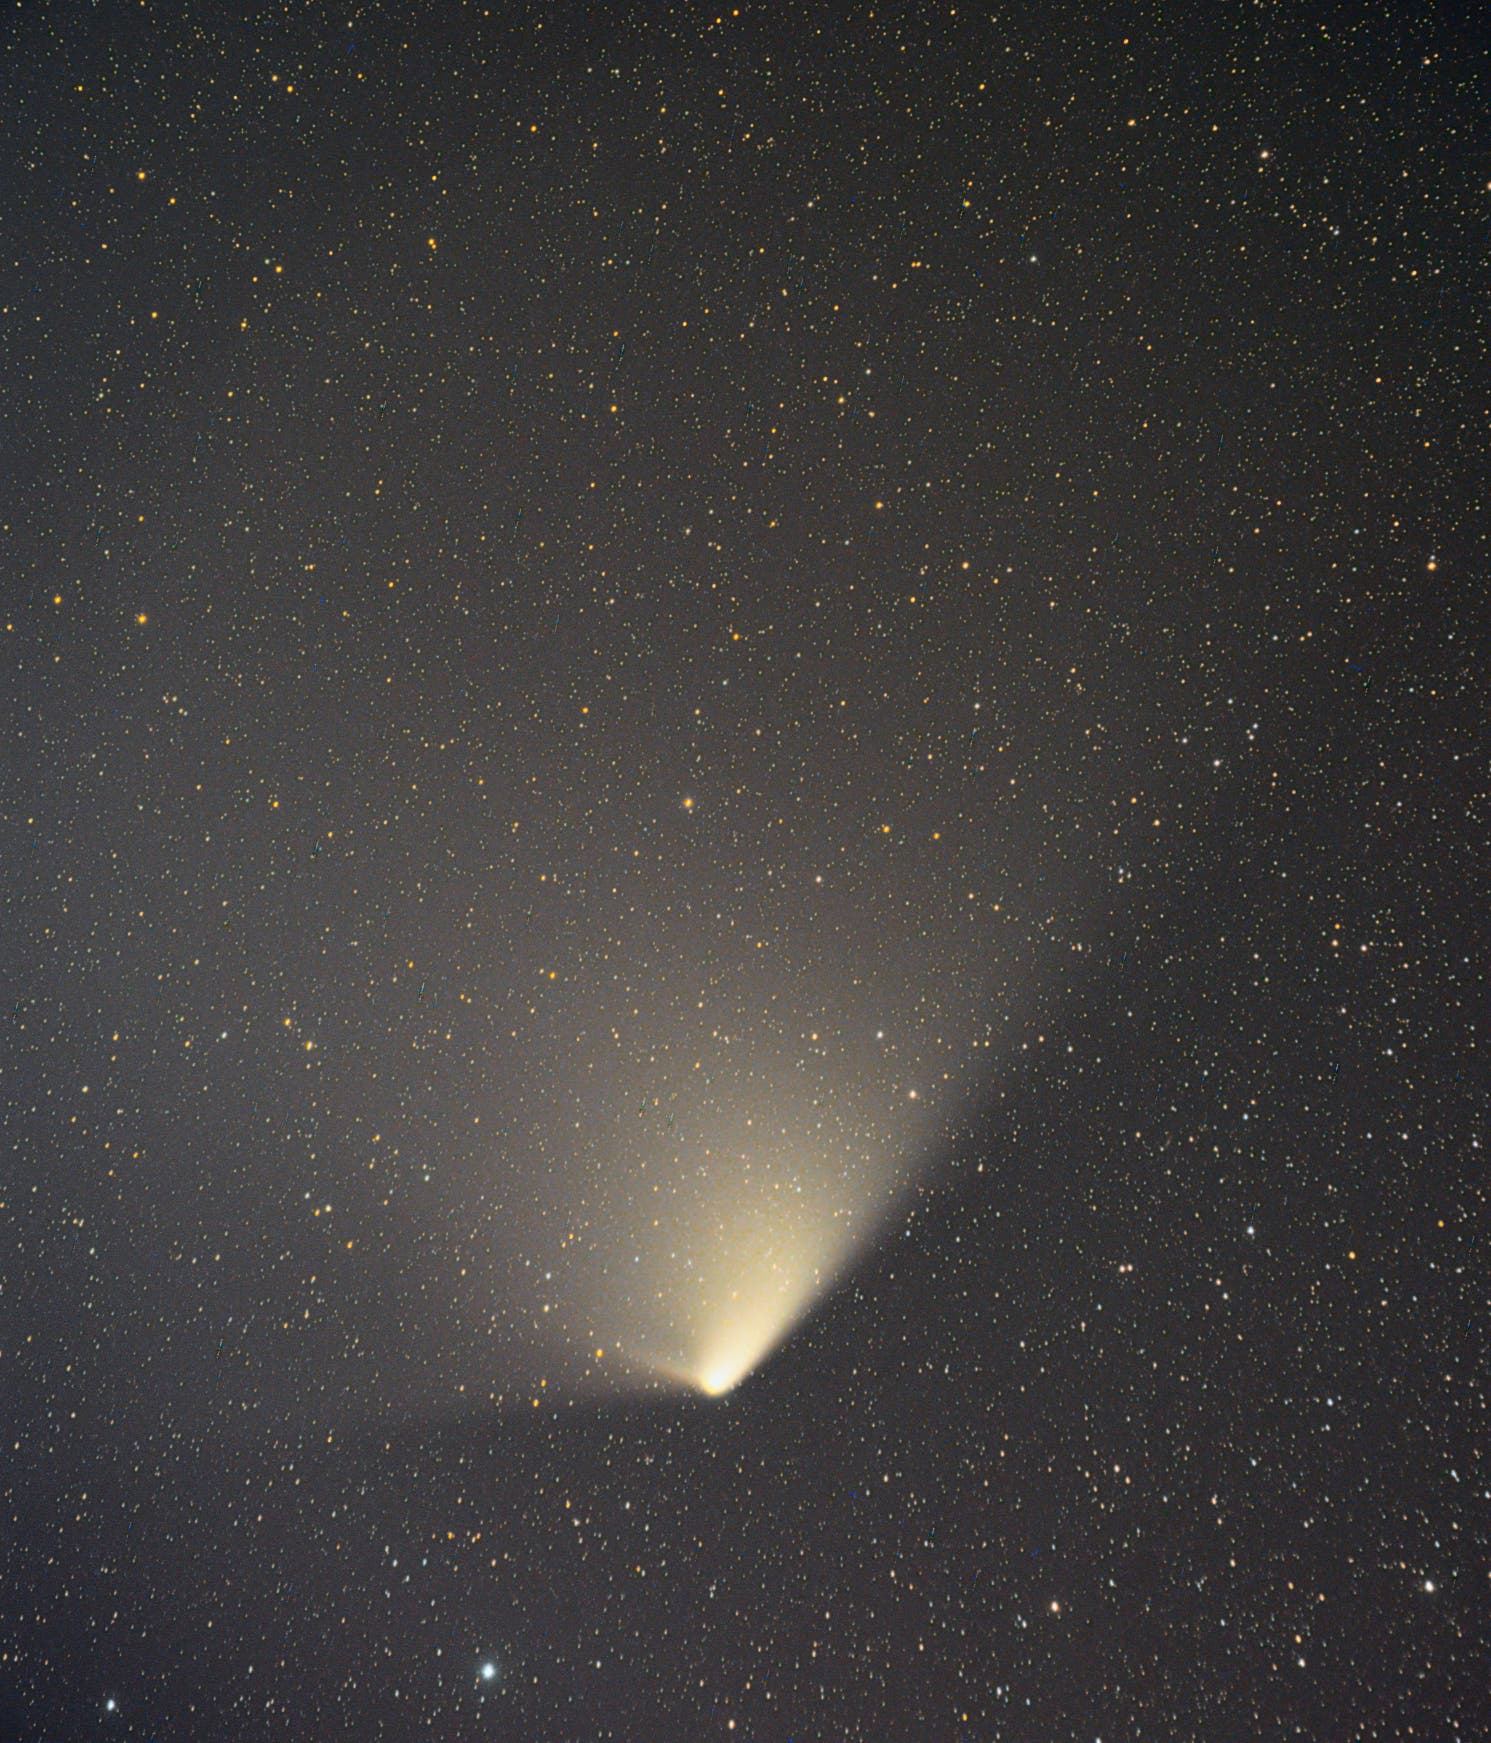 Komet C/2011 L4 Panstarrs